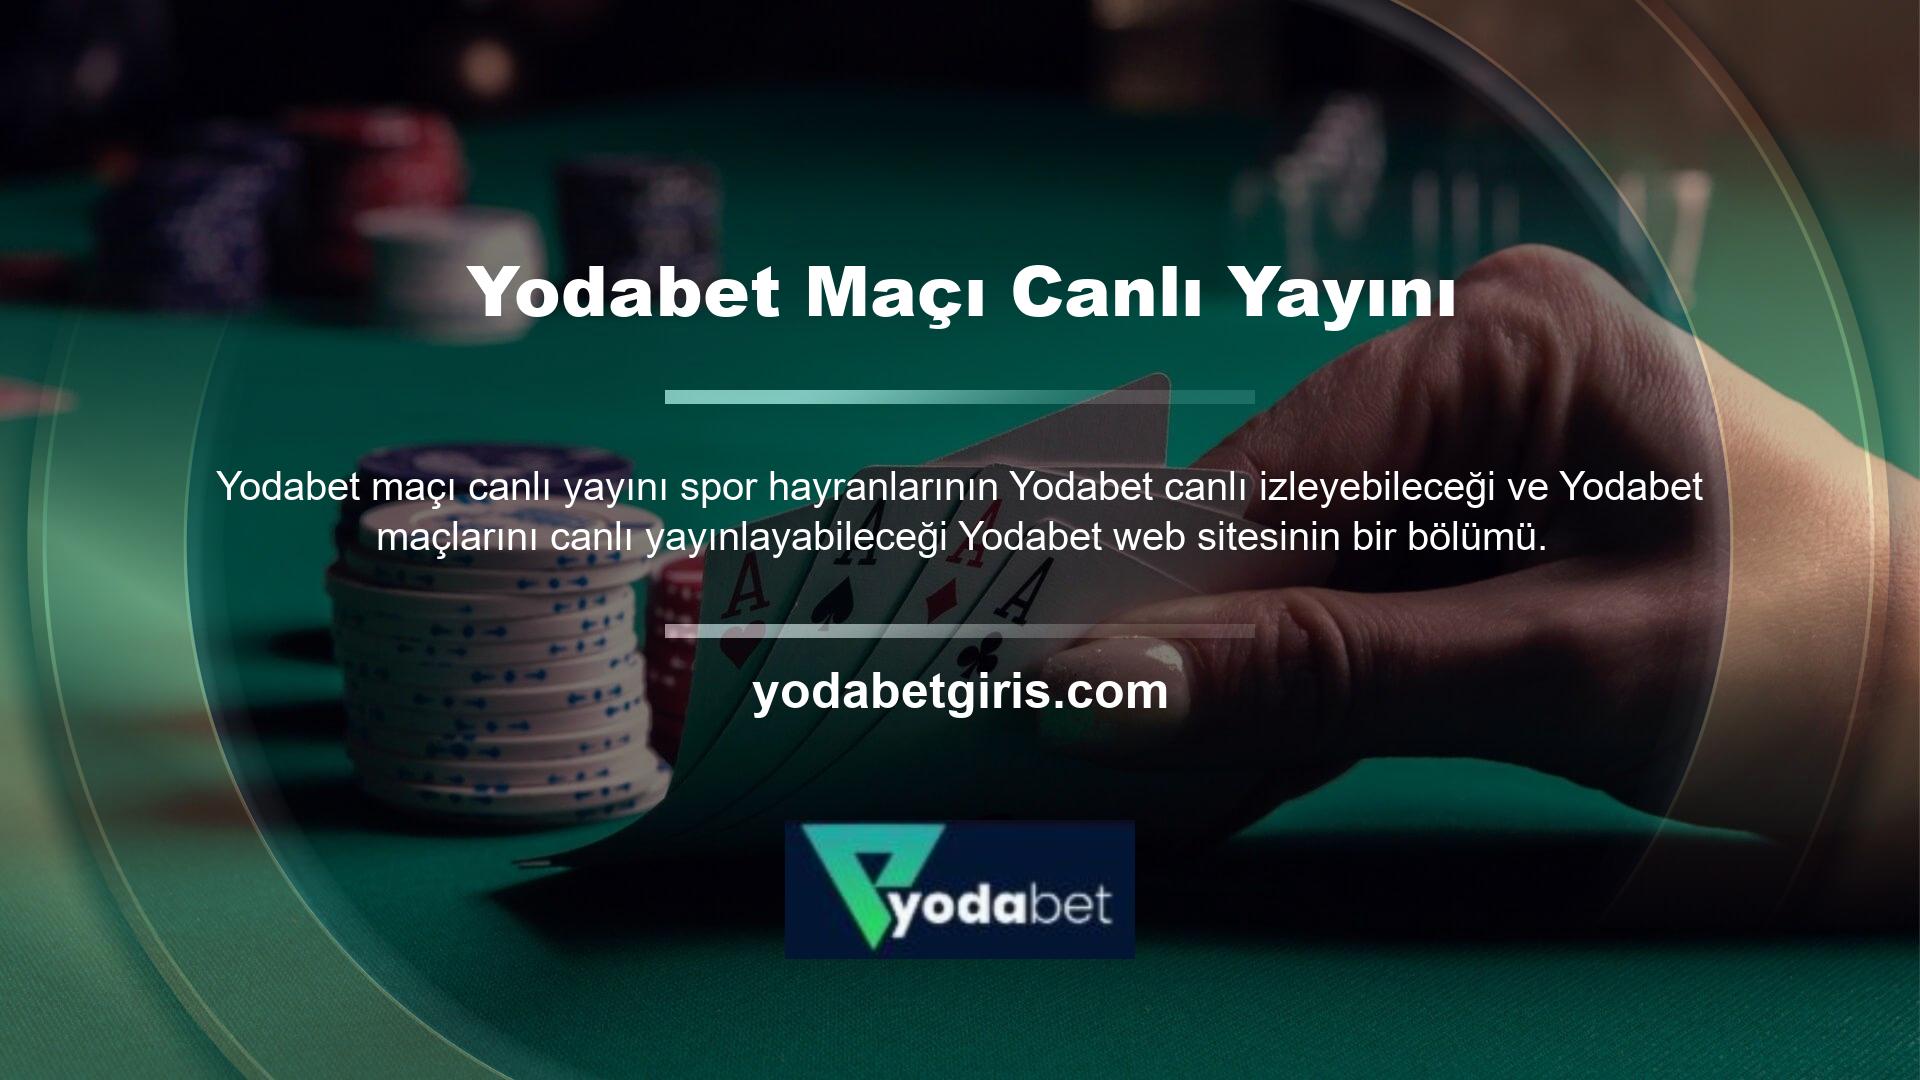 Yodabet, hiçbir karşılık beklemeden canlı spor maçları yayınlayan sitelerden biridir